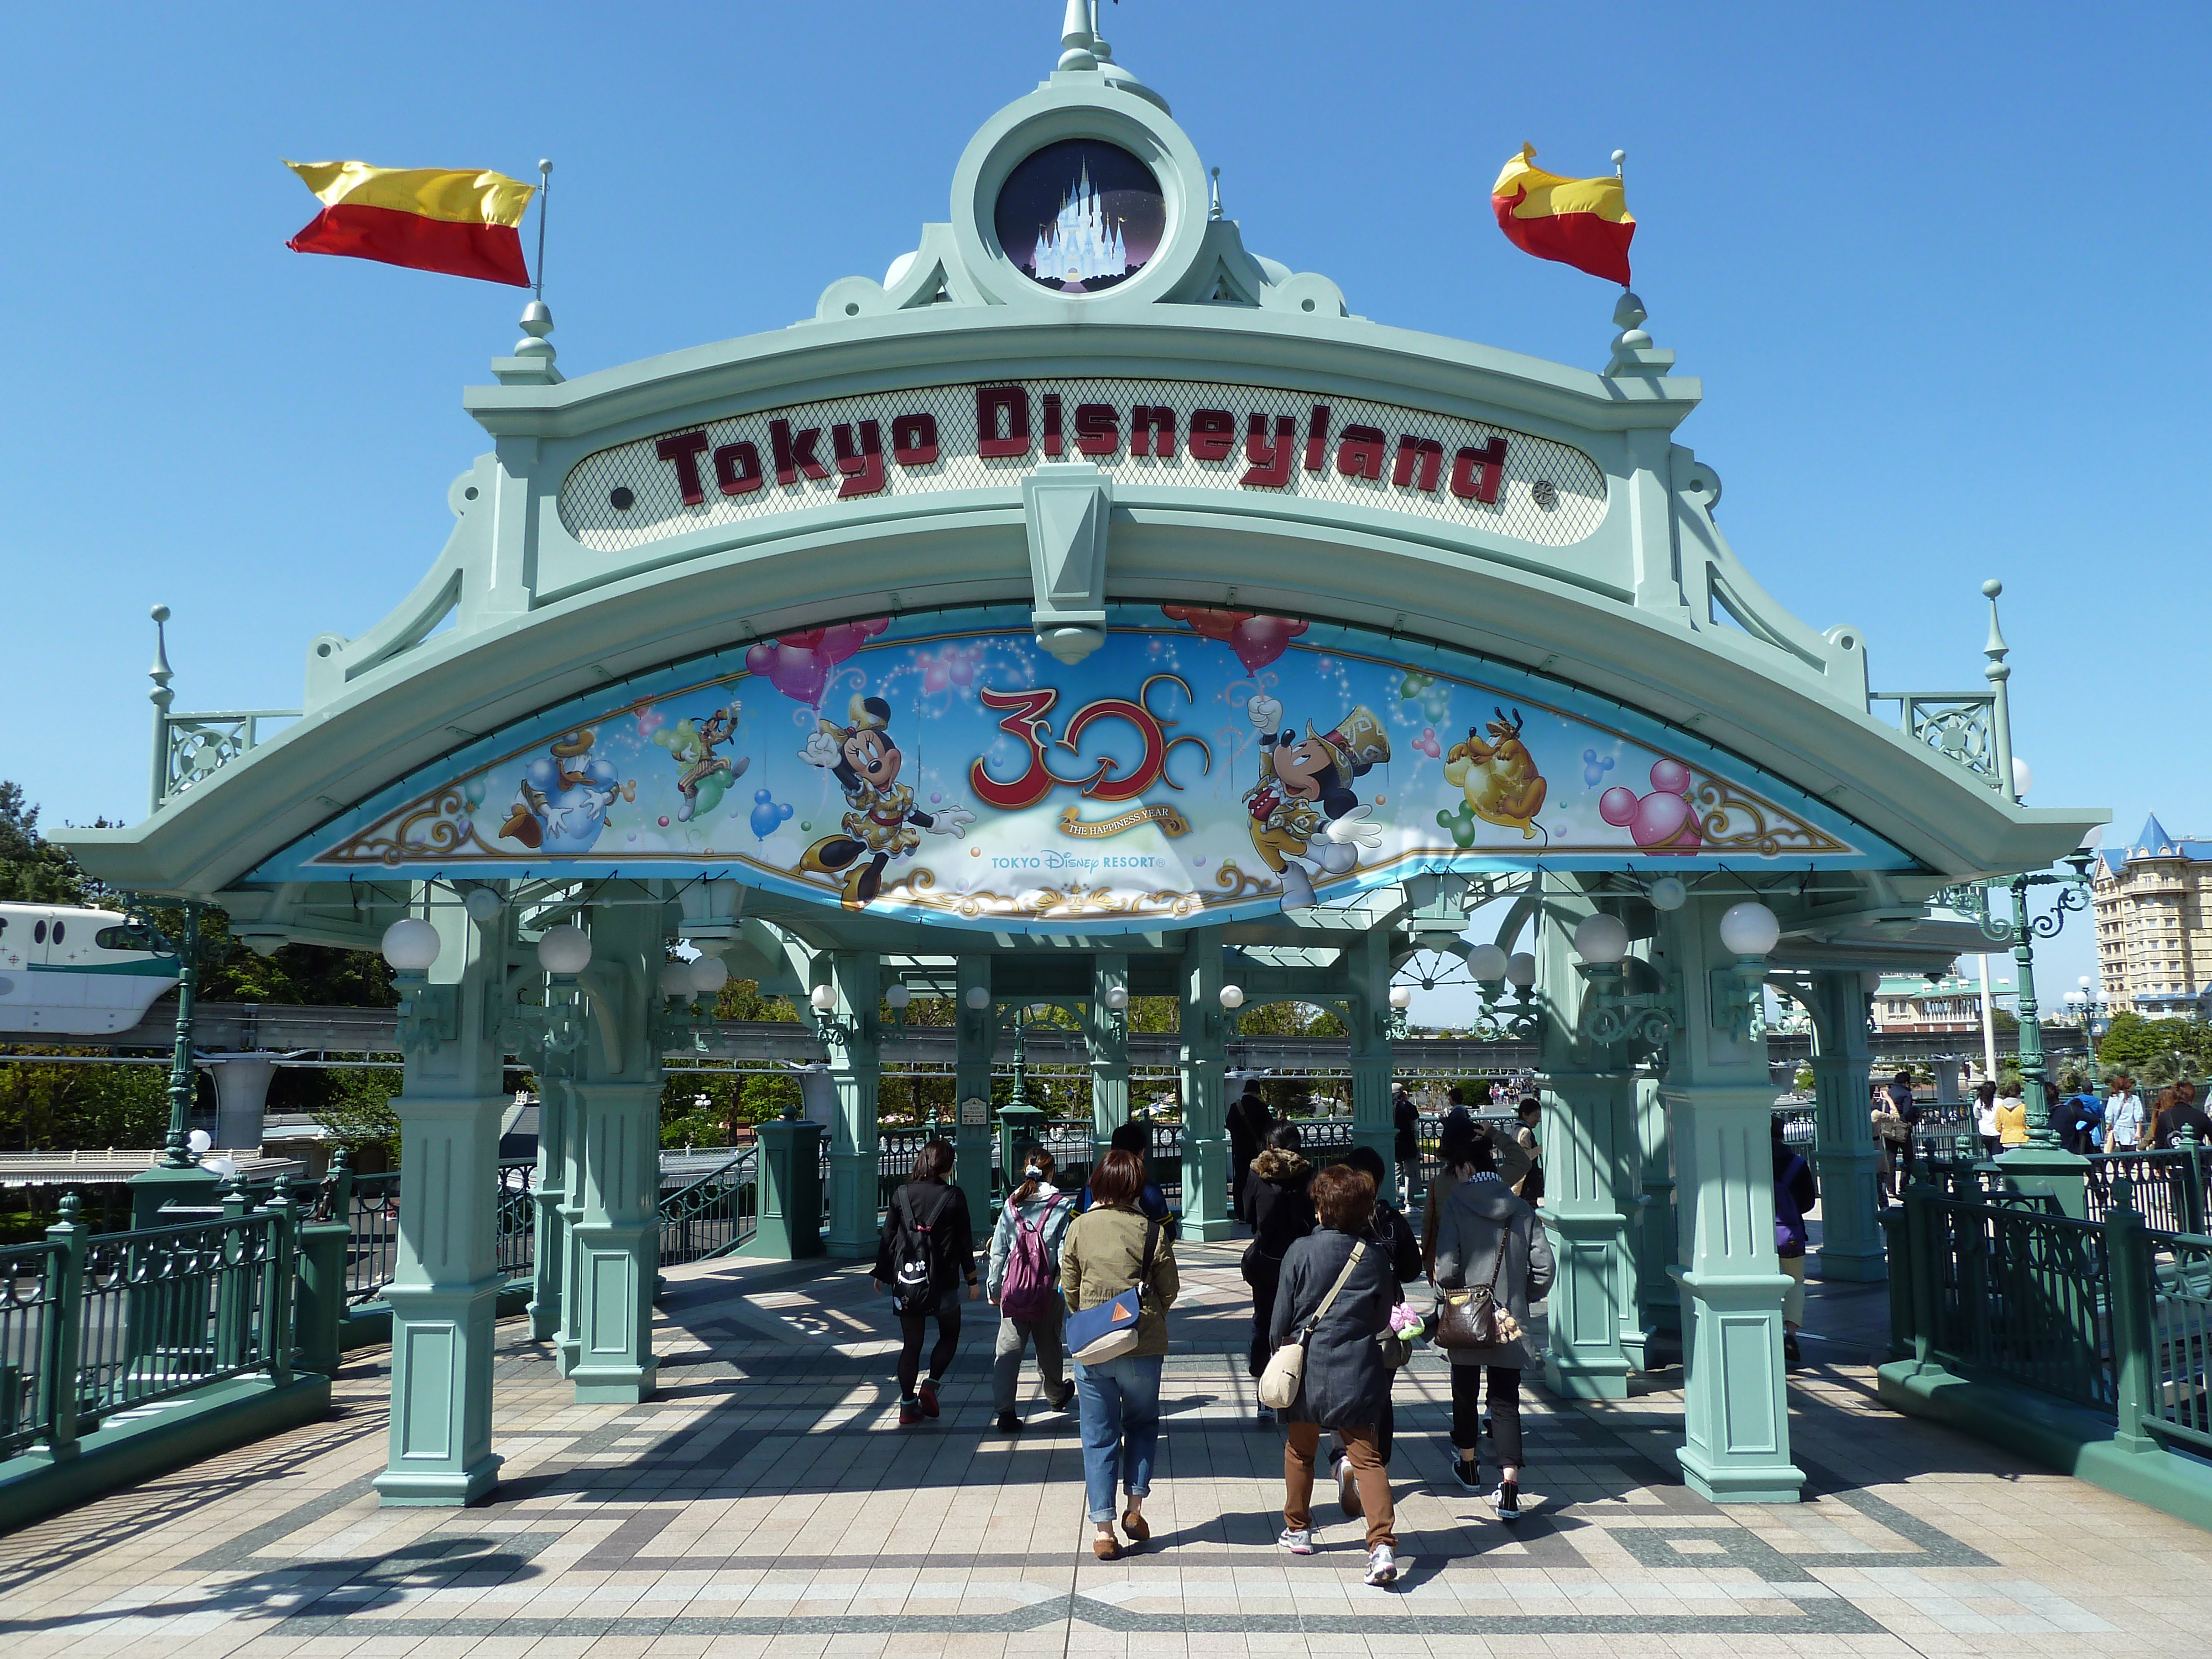 Tokyo Disneyland is oneof the top tourist spots in Tokyo